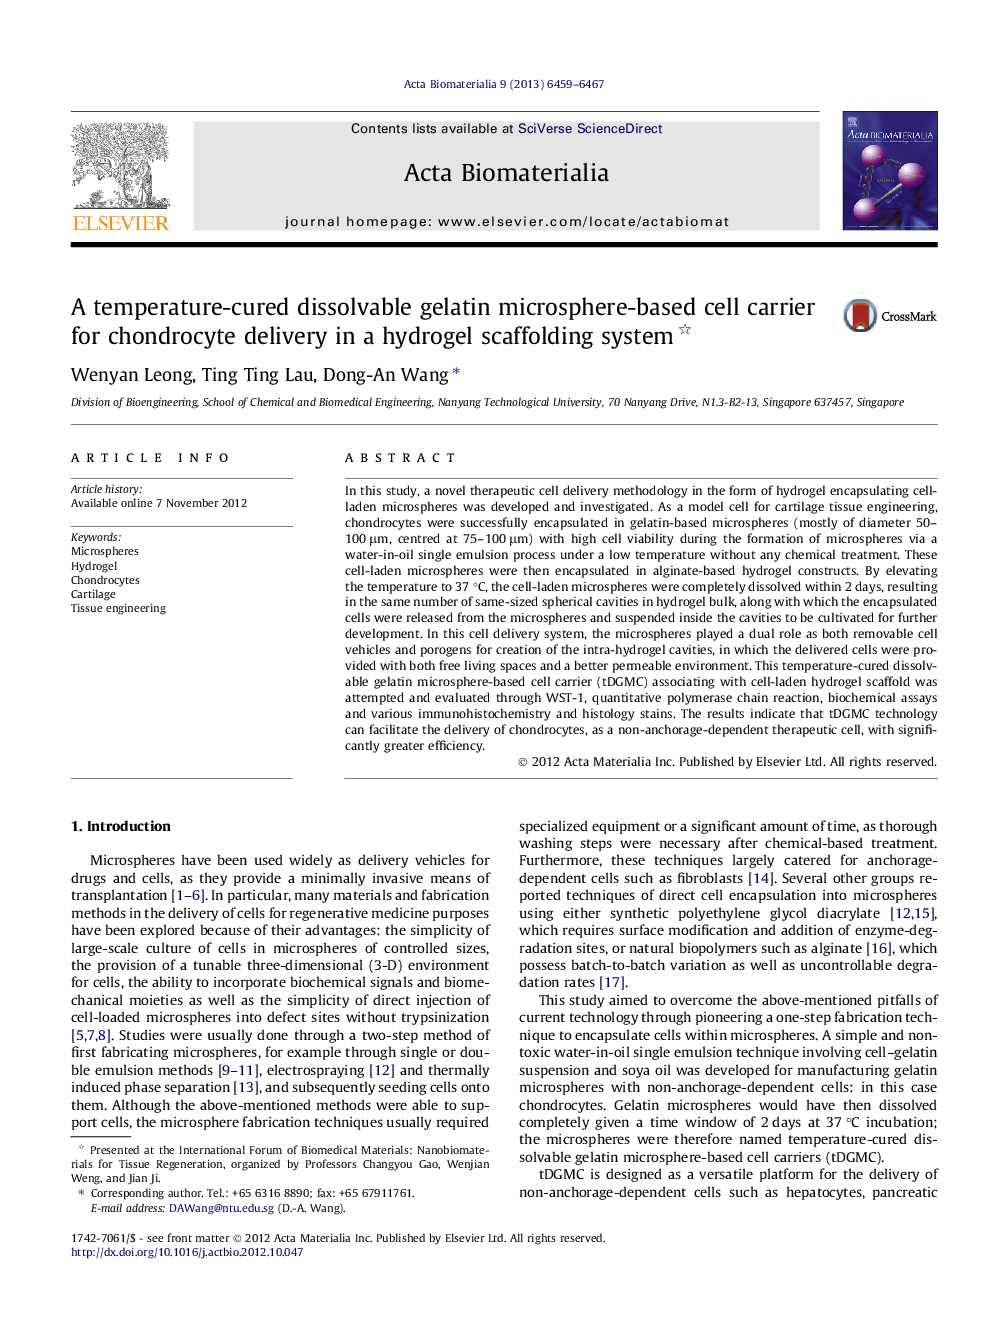 یک ماده سلولی مبتنی بر میکروسفور ژلاتین قابل جدا شدن با دمای تحتانی برای تحویل کاندروسیت در یک سیستم داربست هیدروژل 